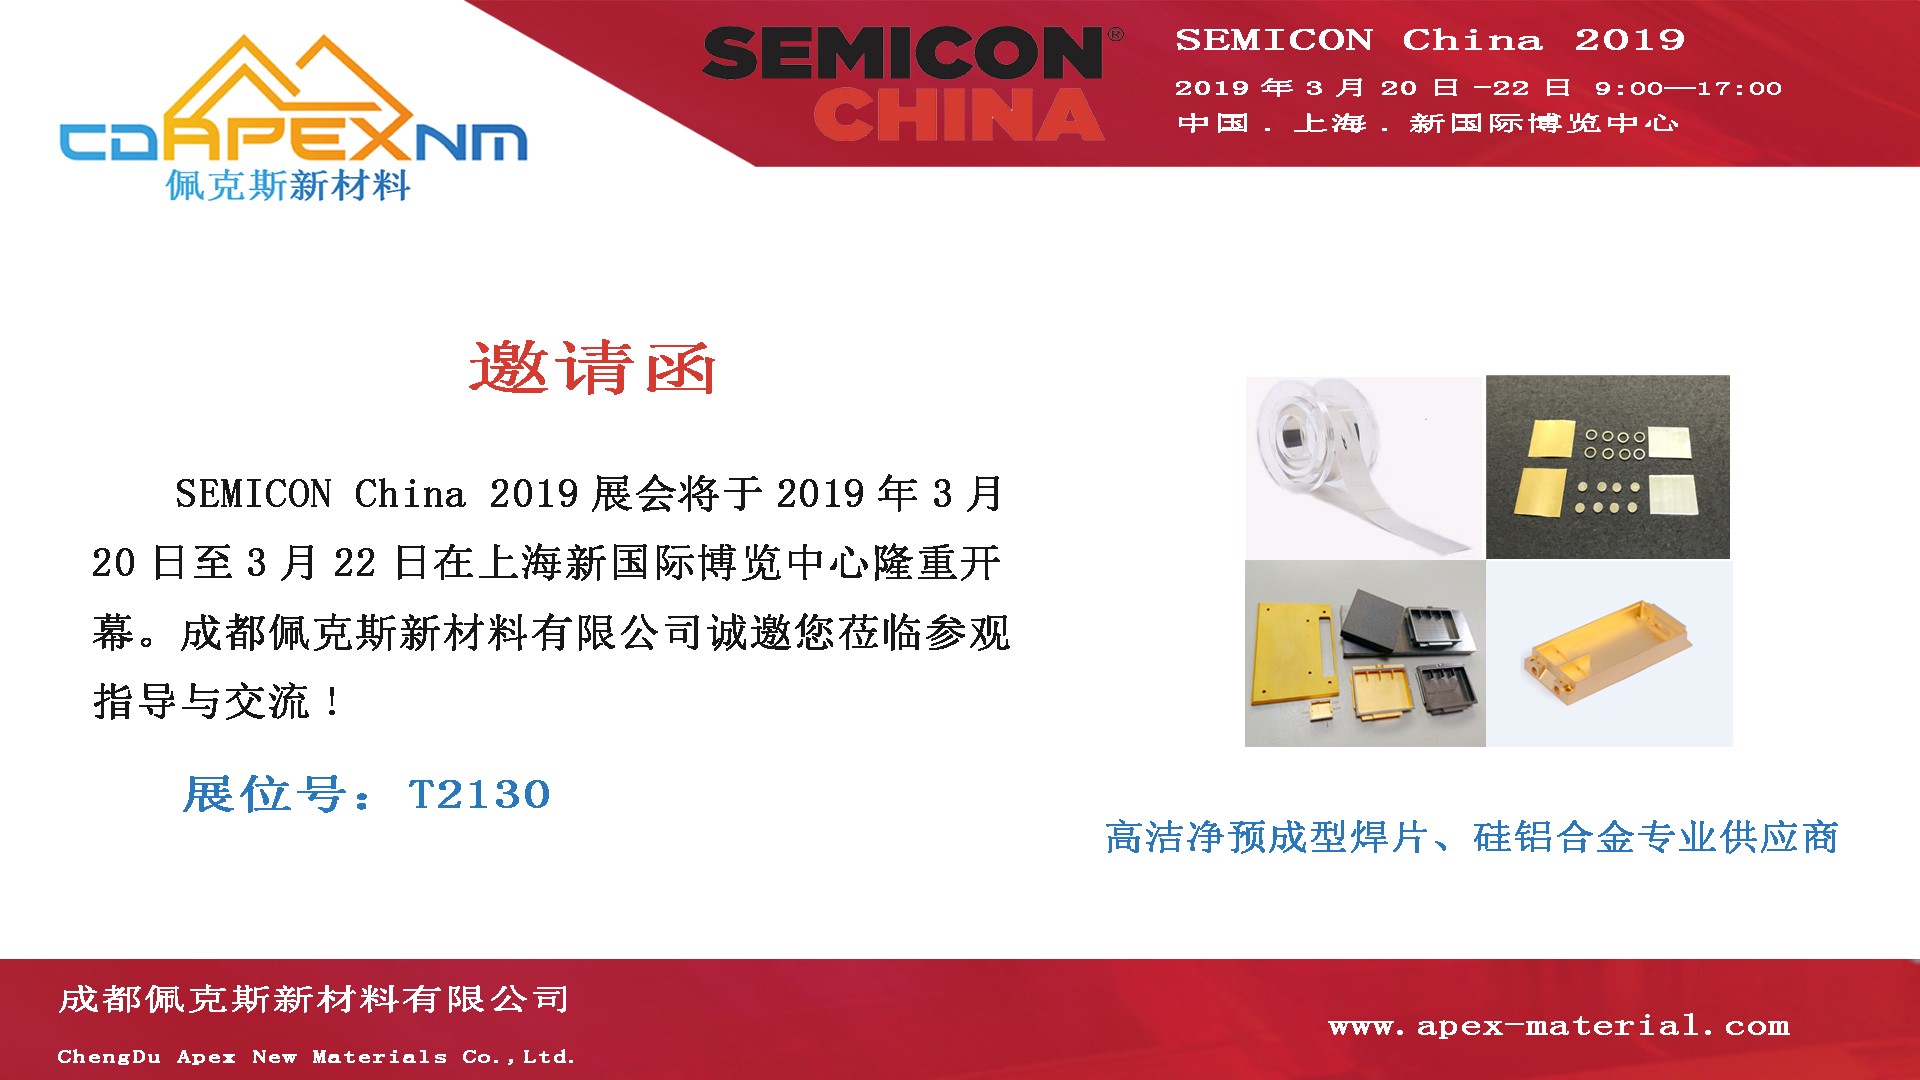 Apex New Materials Co., Ltd. will attend SEMICON China 2019 